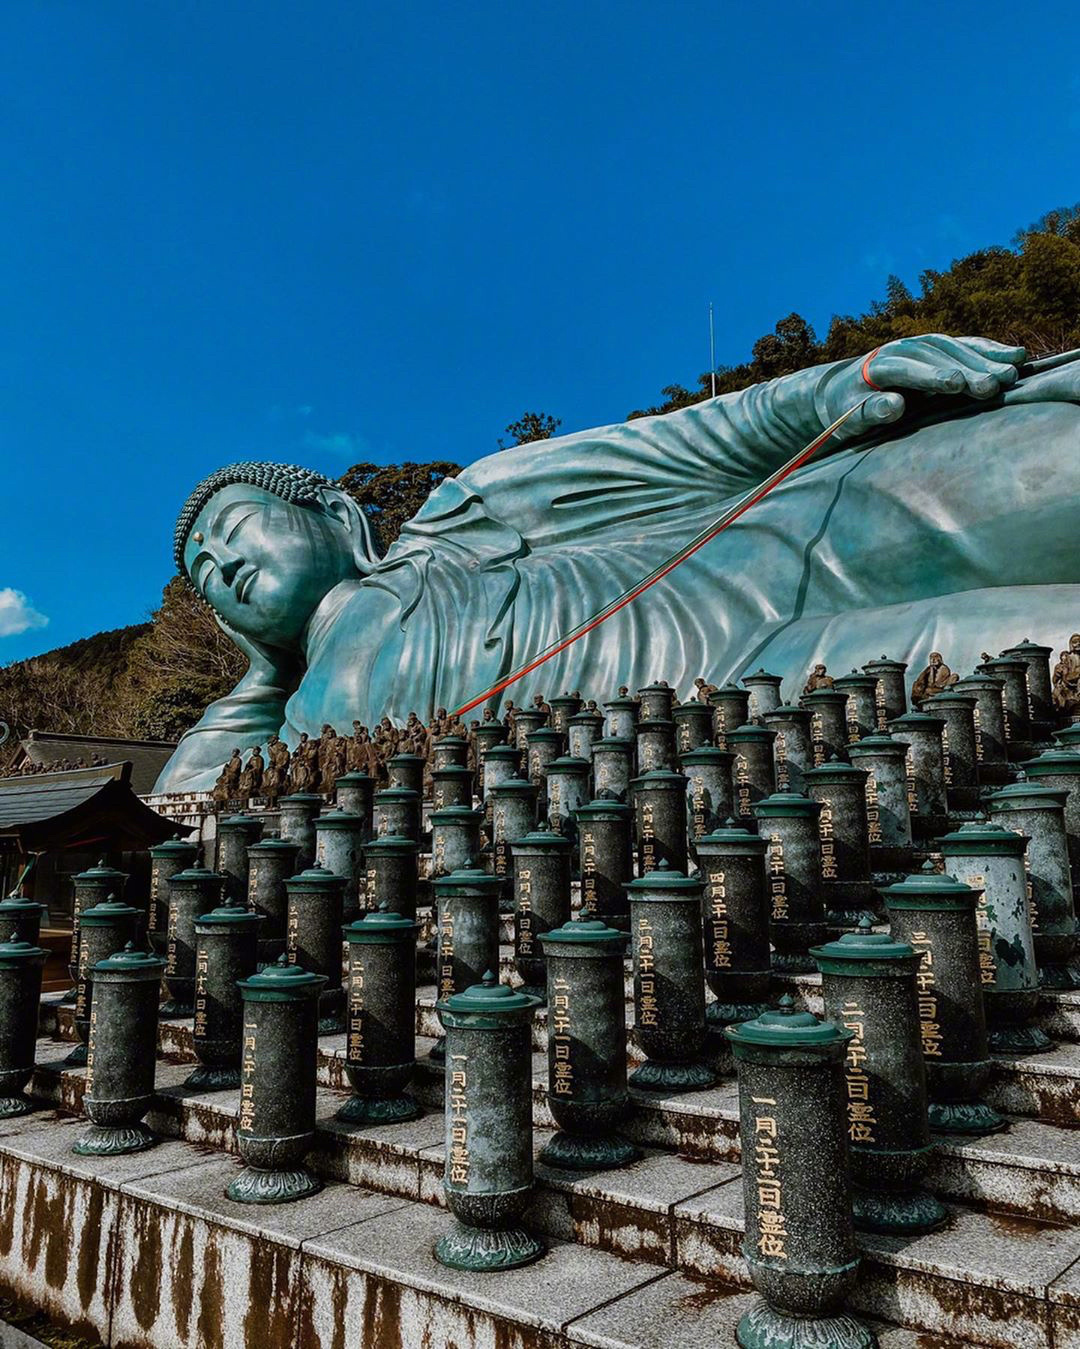 世界最大青铜卧佛 长41米重达300吨,据说见过就会心想事成!